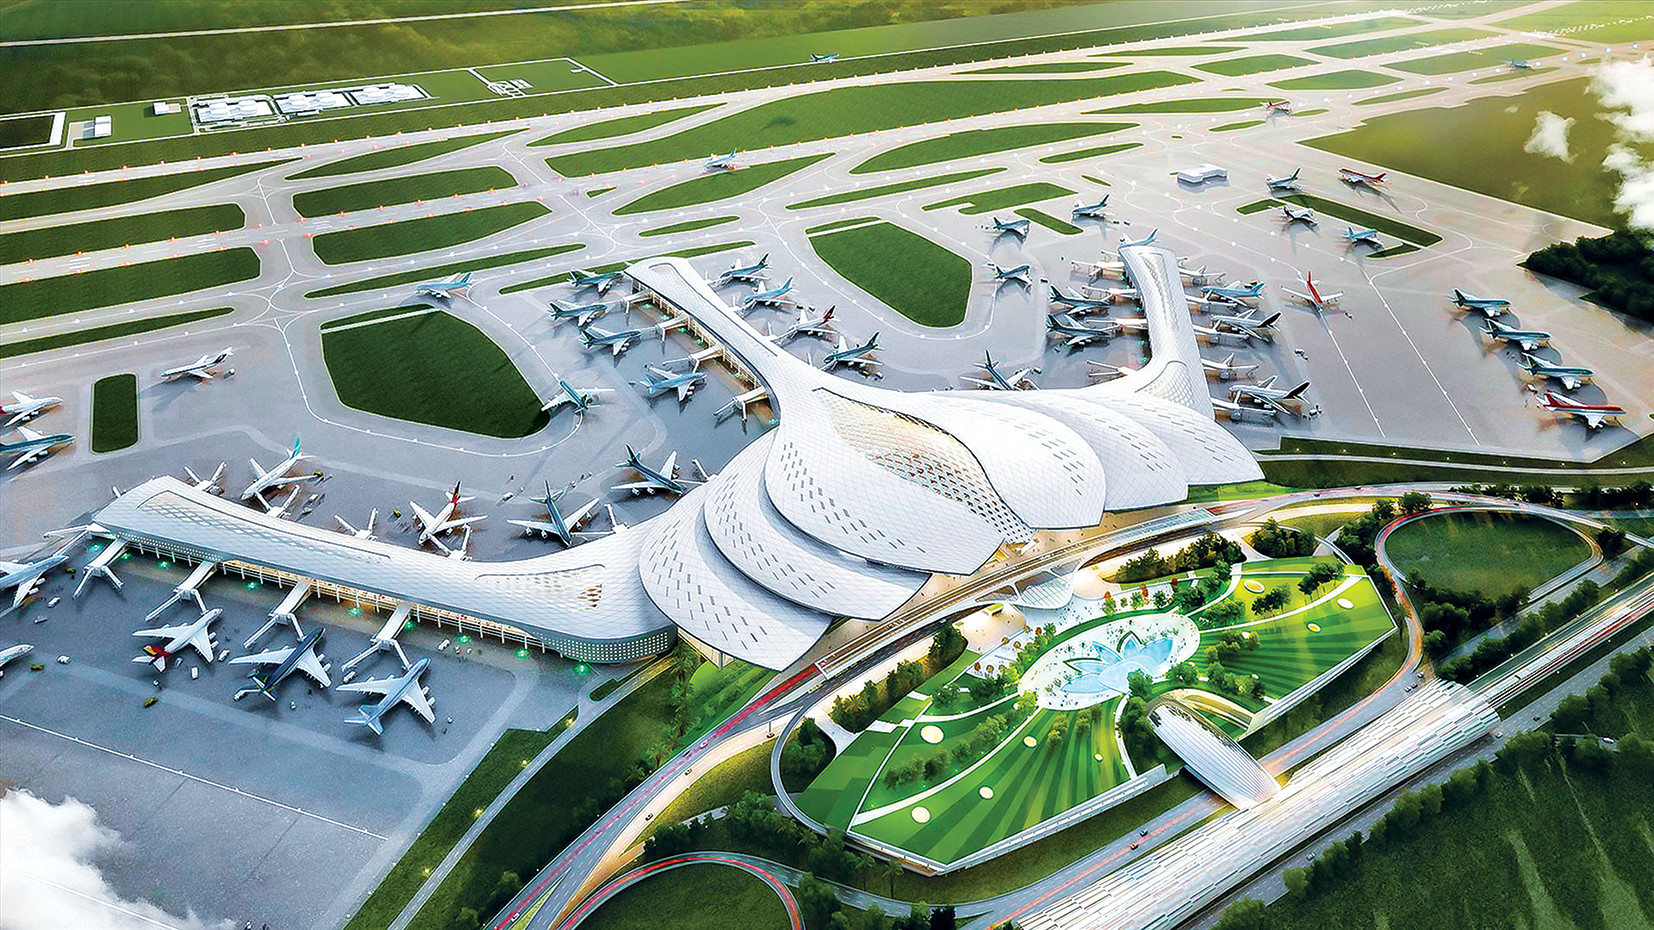 Sân bay Long Thành đang trở thành điểm đến nổi bật của du lịch. Cùng xem những hình ảnh về sân bay mới này để có cái nhìn tổng quan về dự án đầy hứa hẹn này.